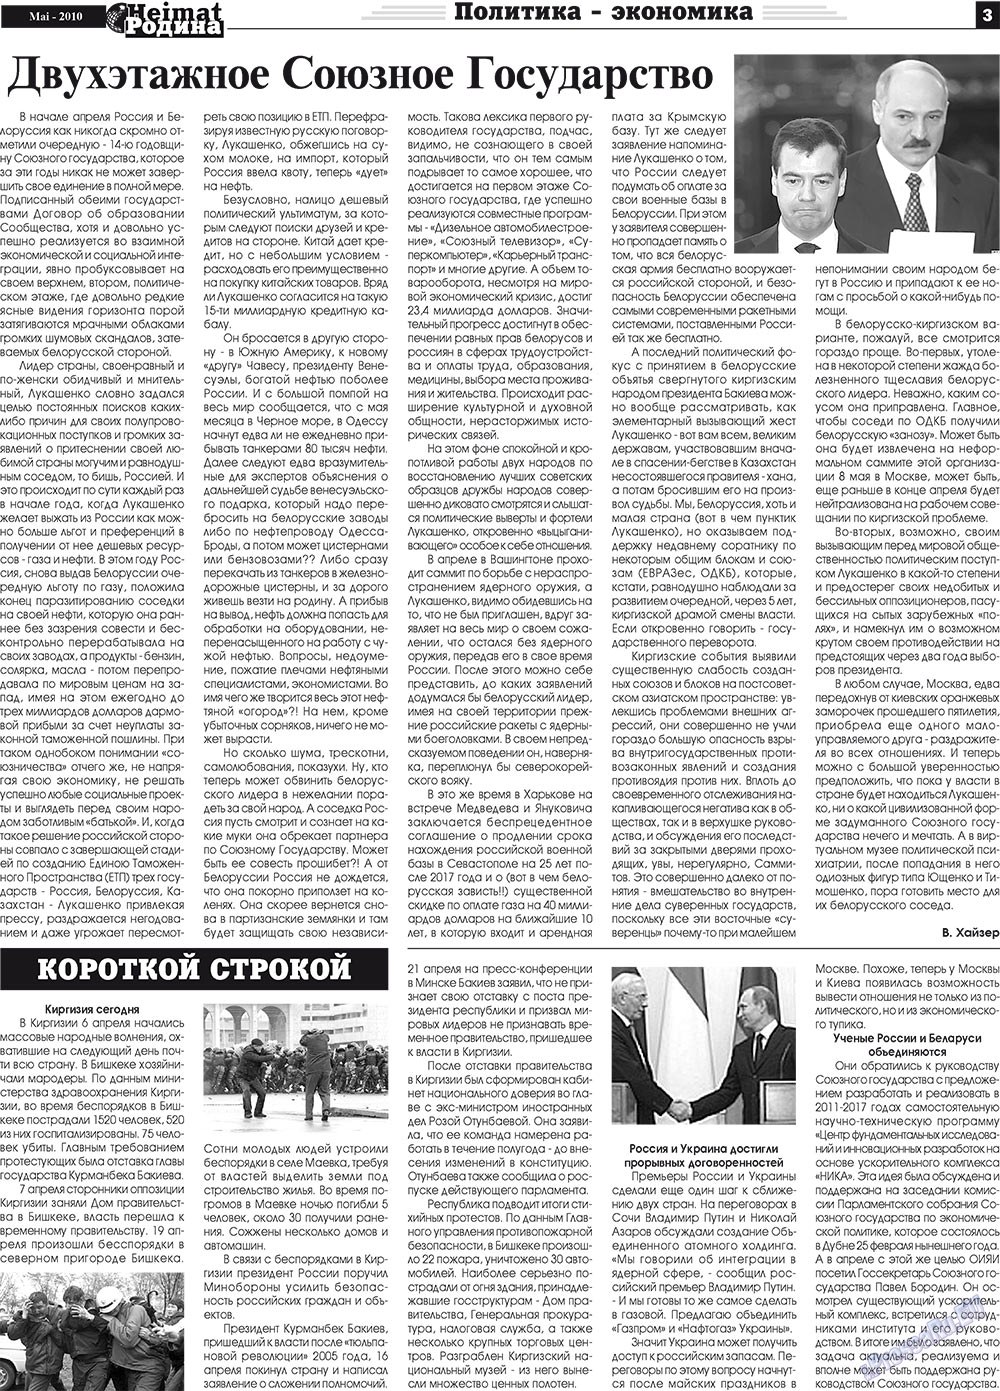 Heimat-Родина (газета). 2010 год, номер 5, стр. 3